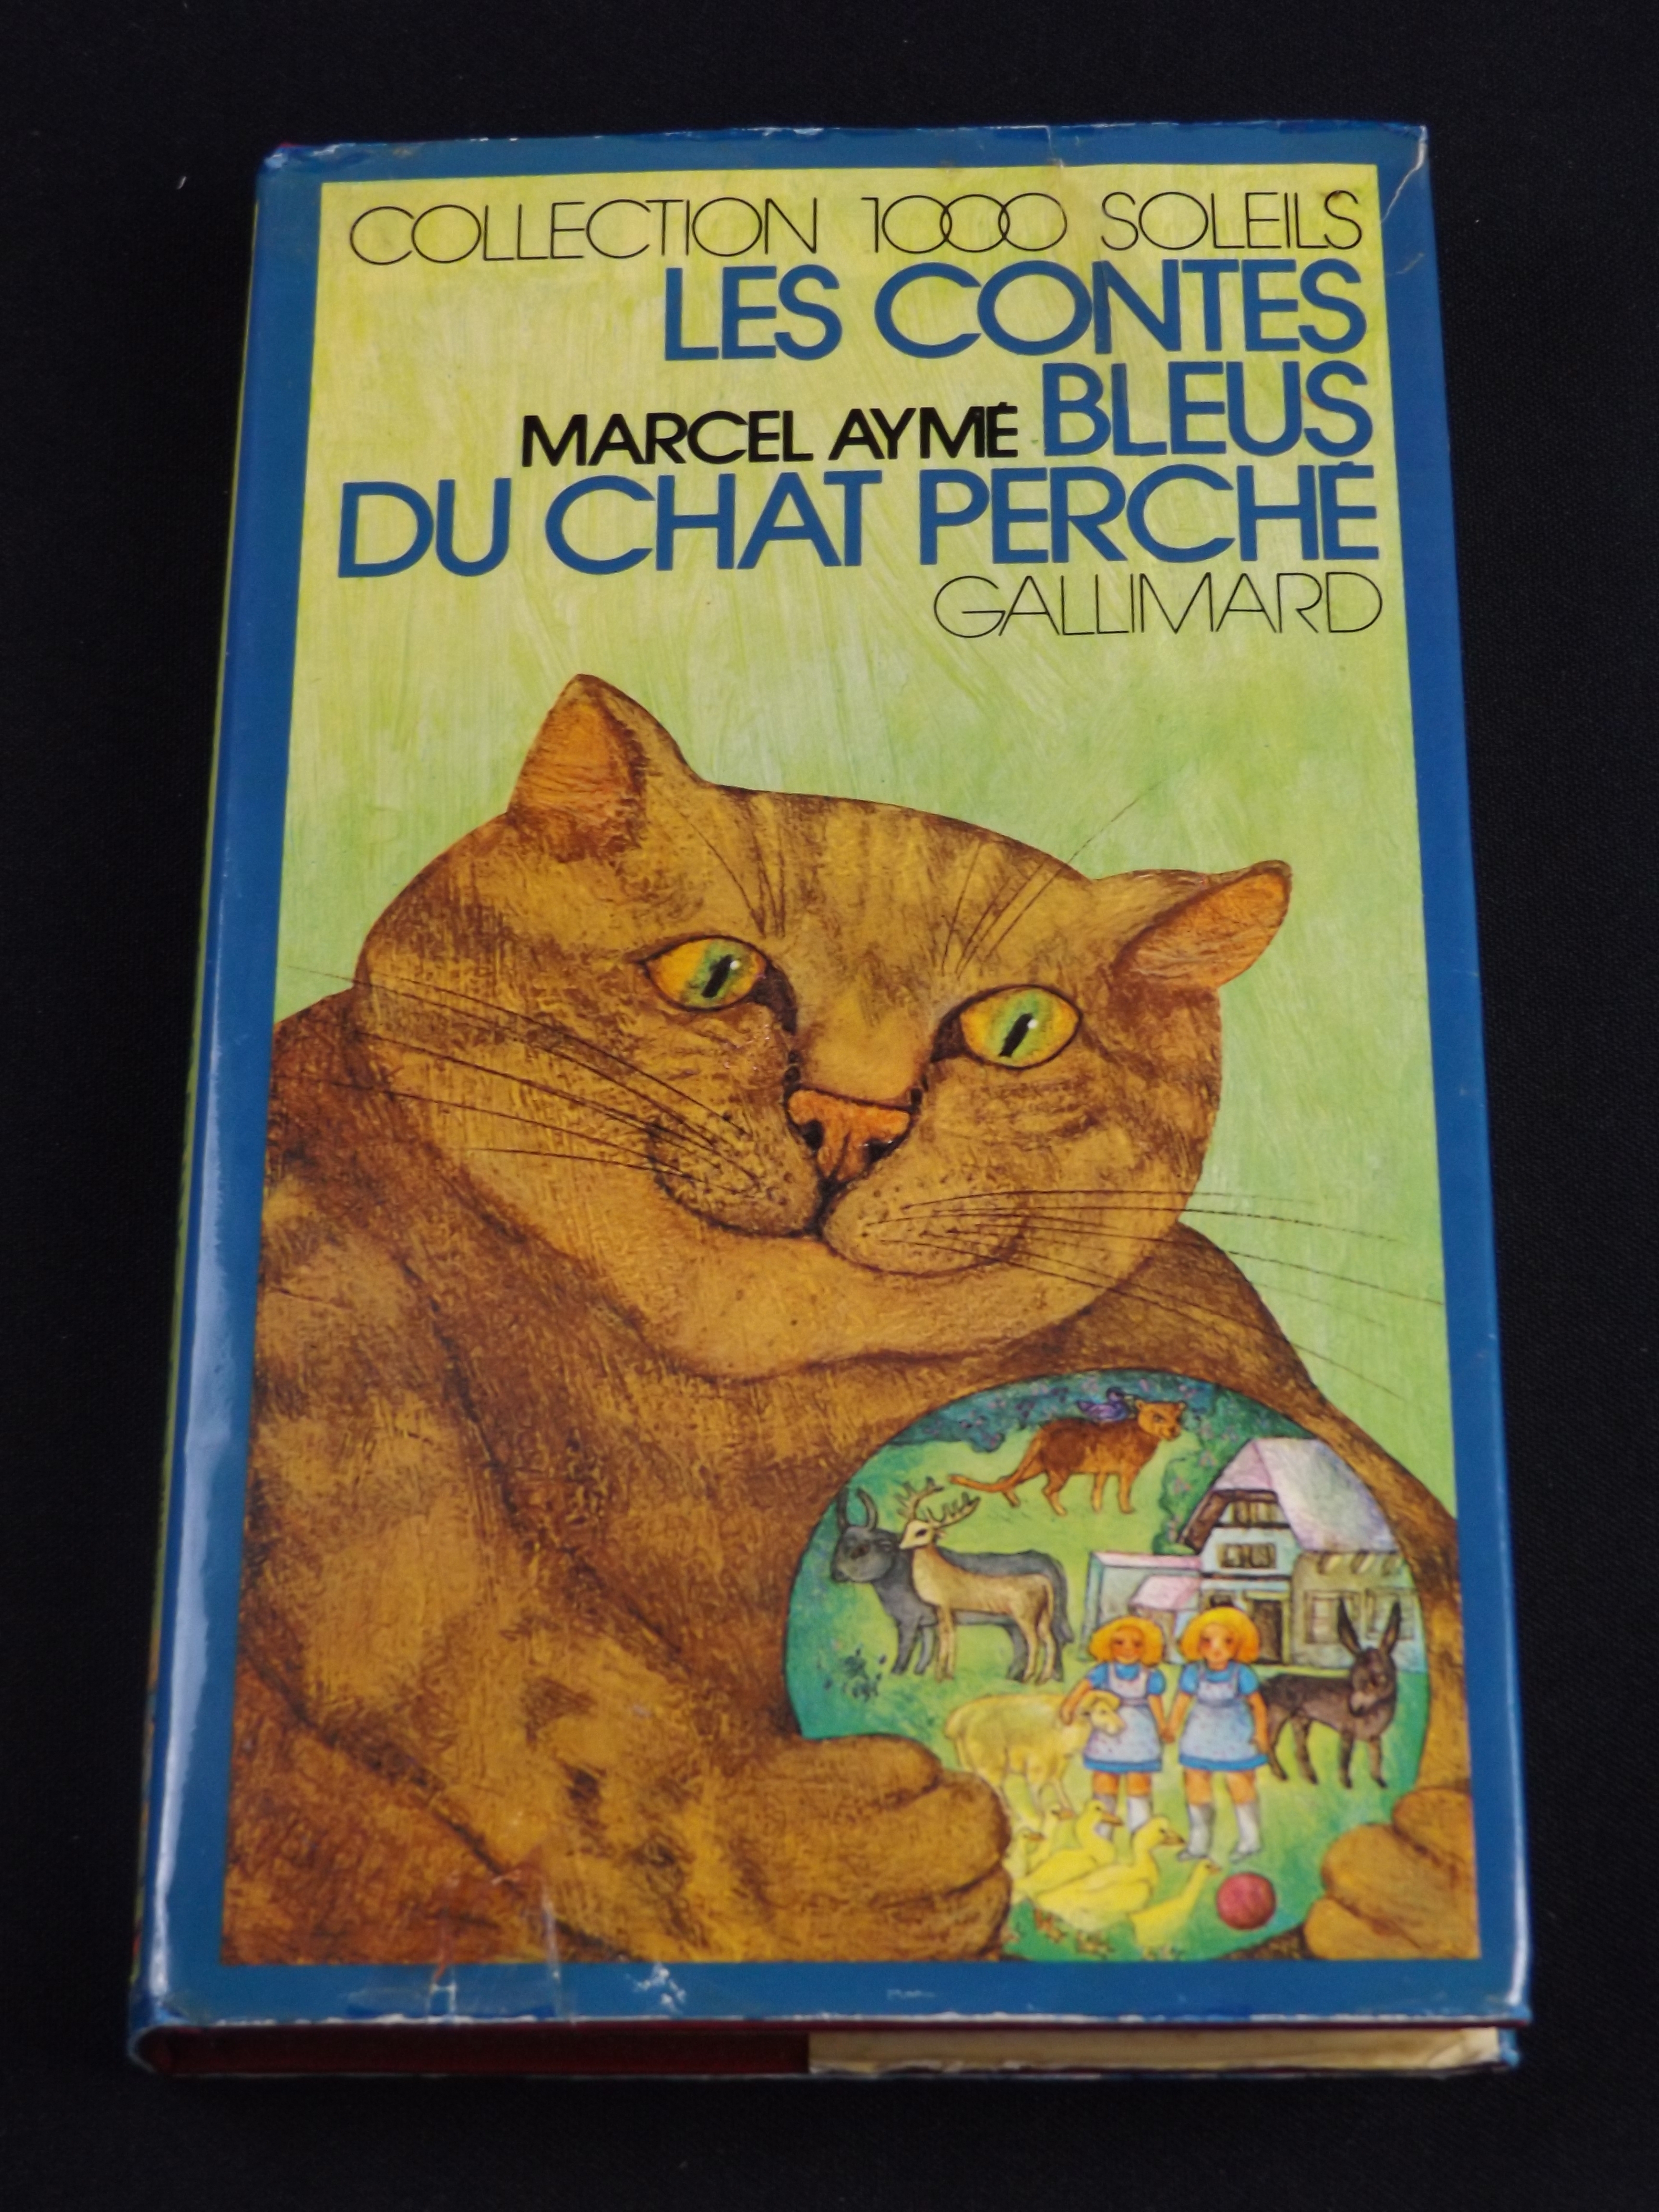 Les contes bleus du chat perché, Marcel Aymé, Gallimard, Collection 1000 Soleils, jaquette d’Éléonore Schmid           